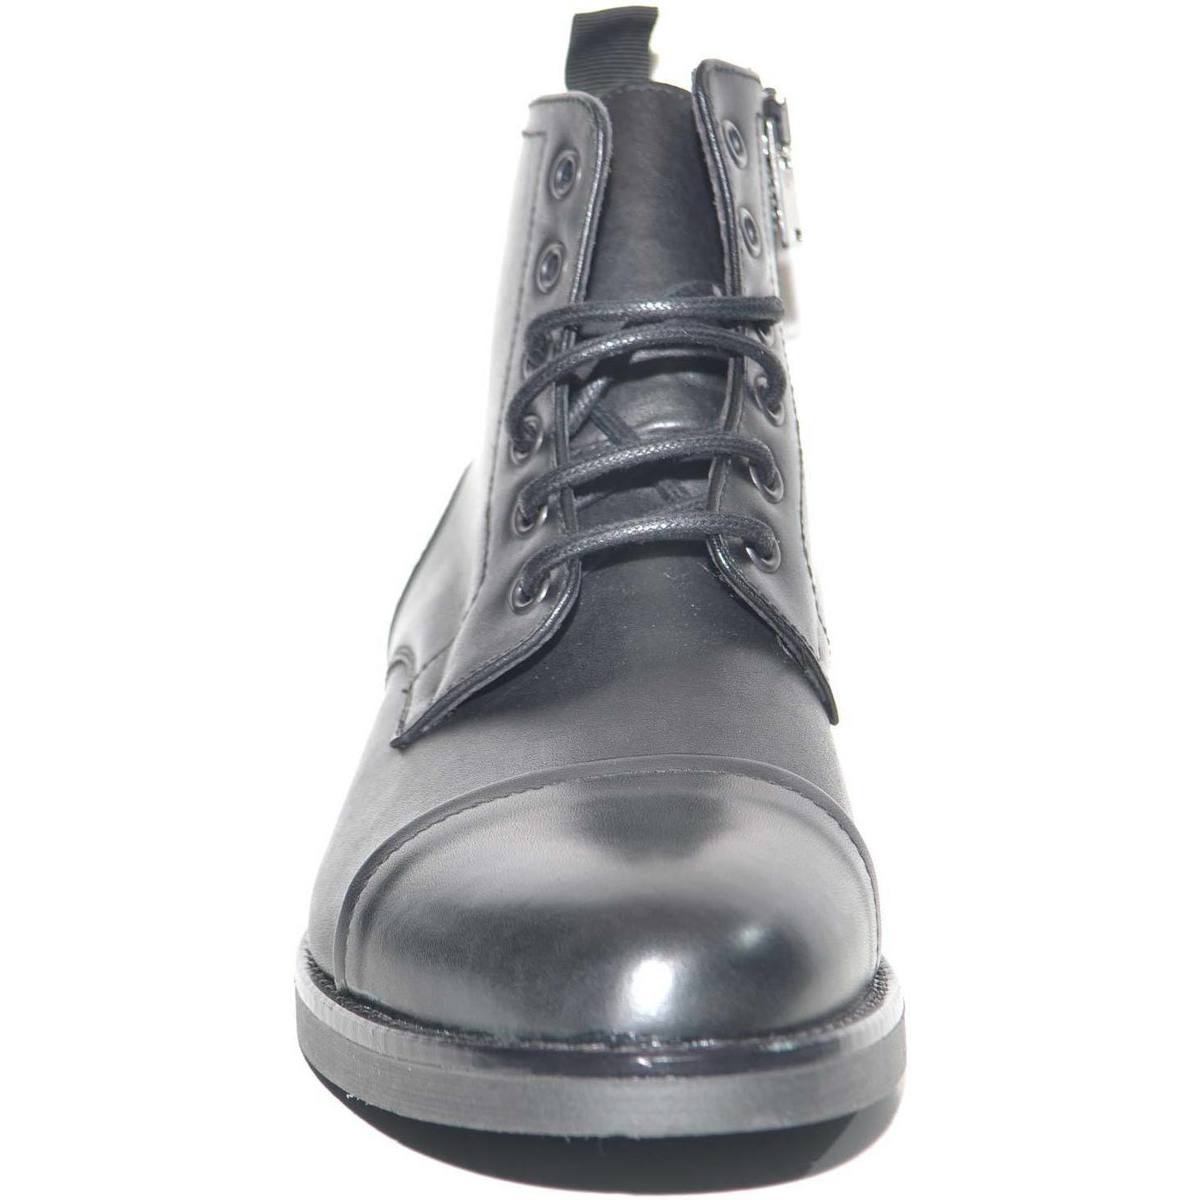 Scarpe Uomo Stivali Malu Shoes Anfibio vintage in vera pelle nero spazzolato fondo gomma lacci Nero